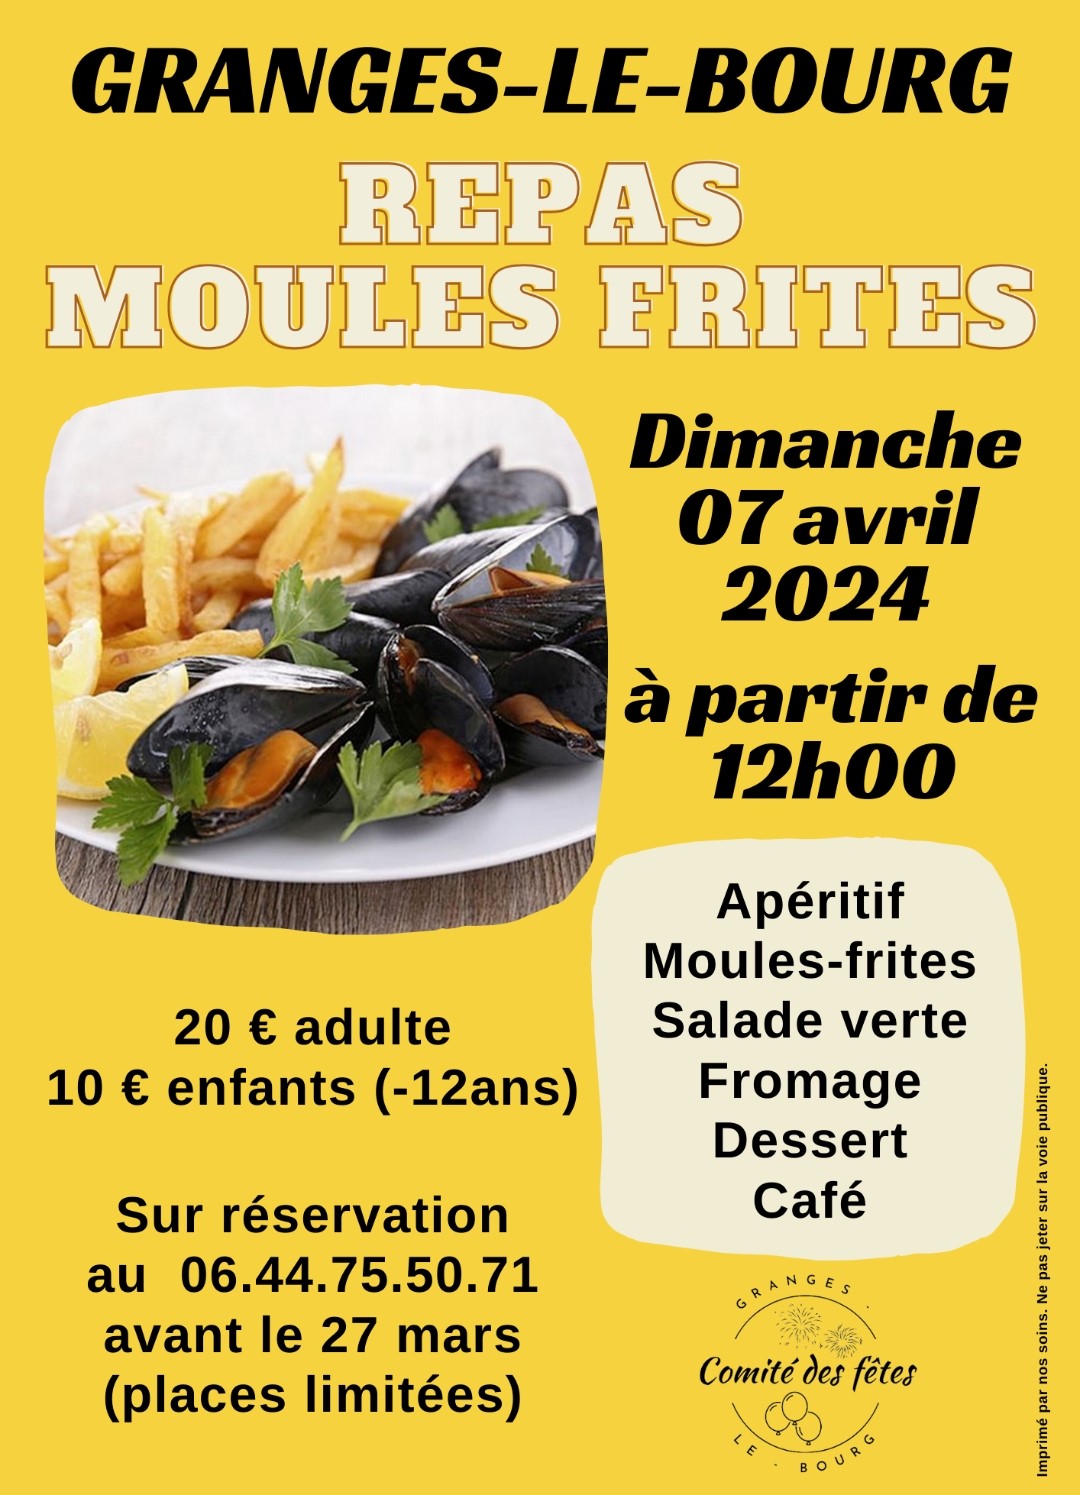 Repas moules frites - Dimanche 07 avril 2024